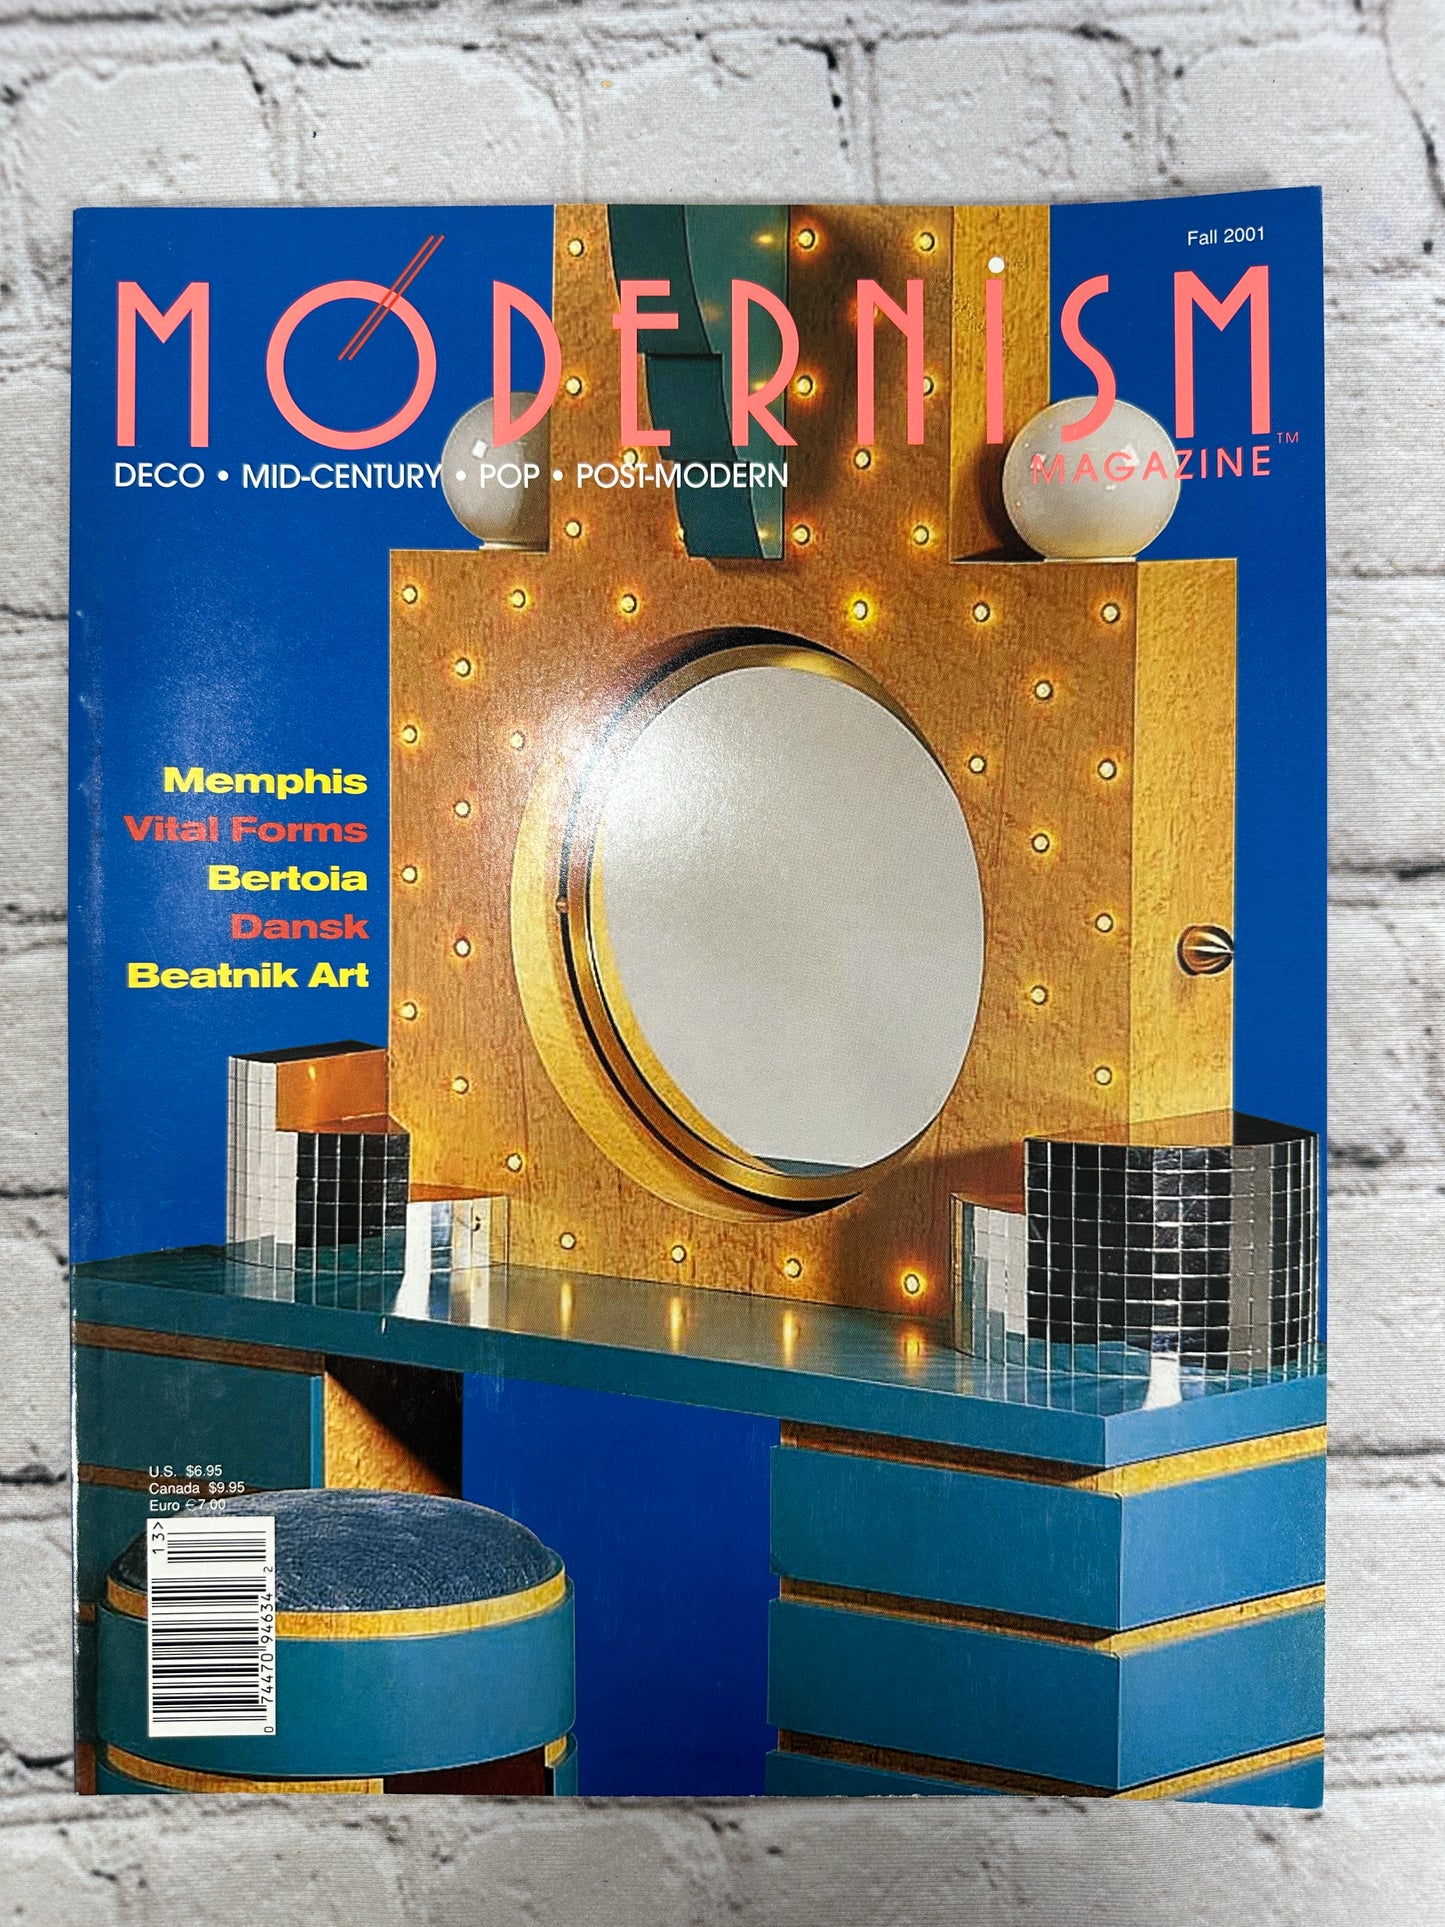 Modernism Magazine [Fall 2001]